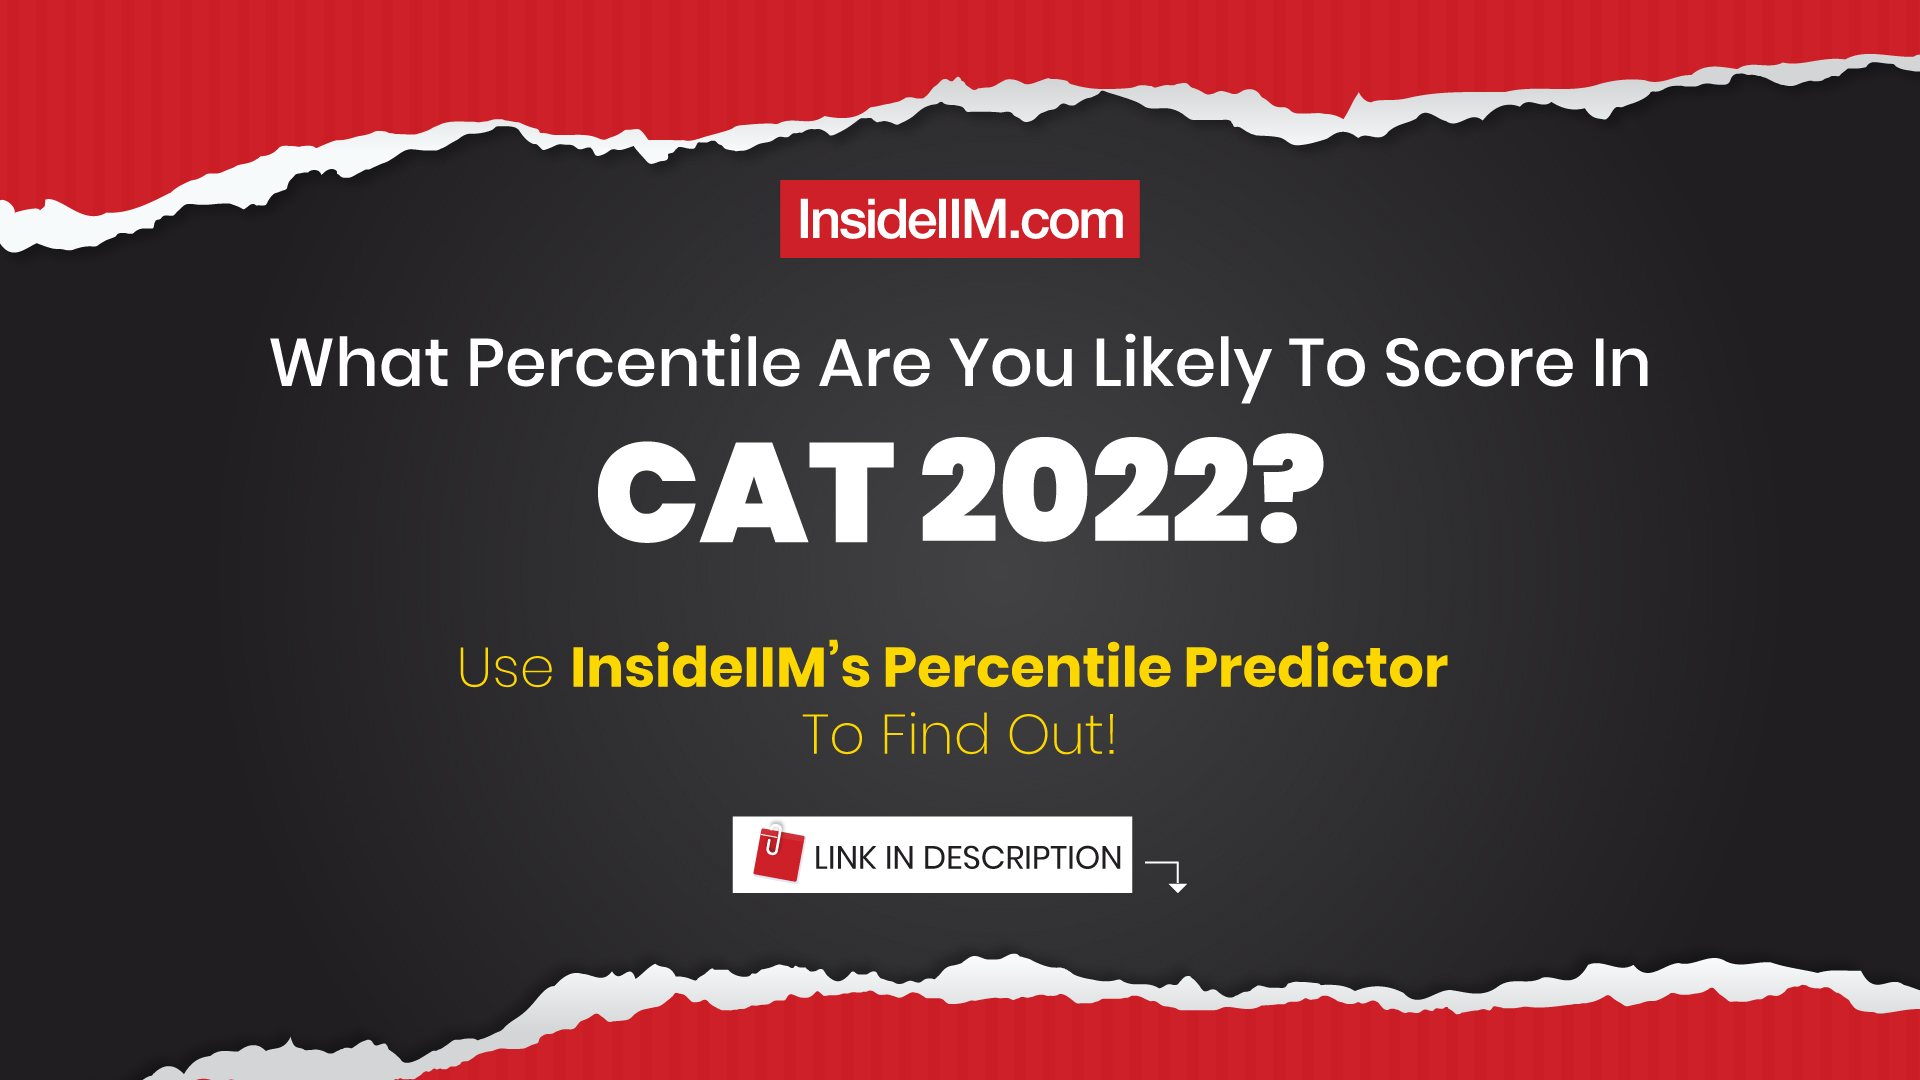 InsideIIM's CAT 2022 Percentile Predictor